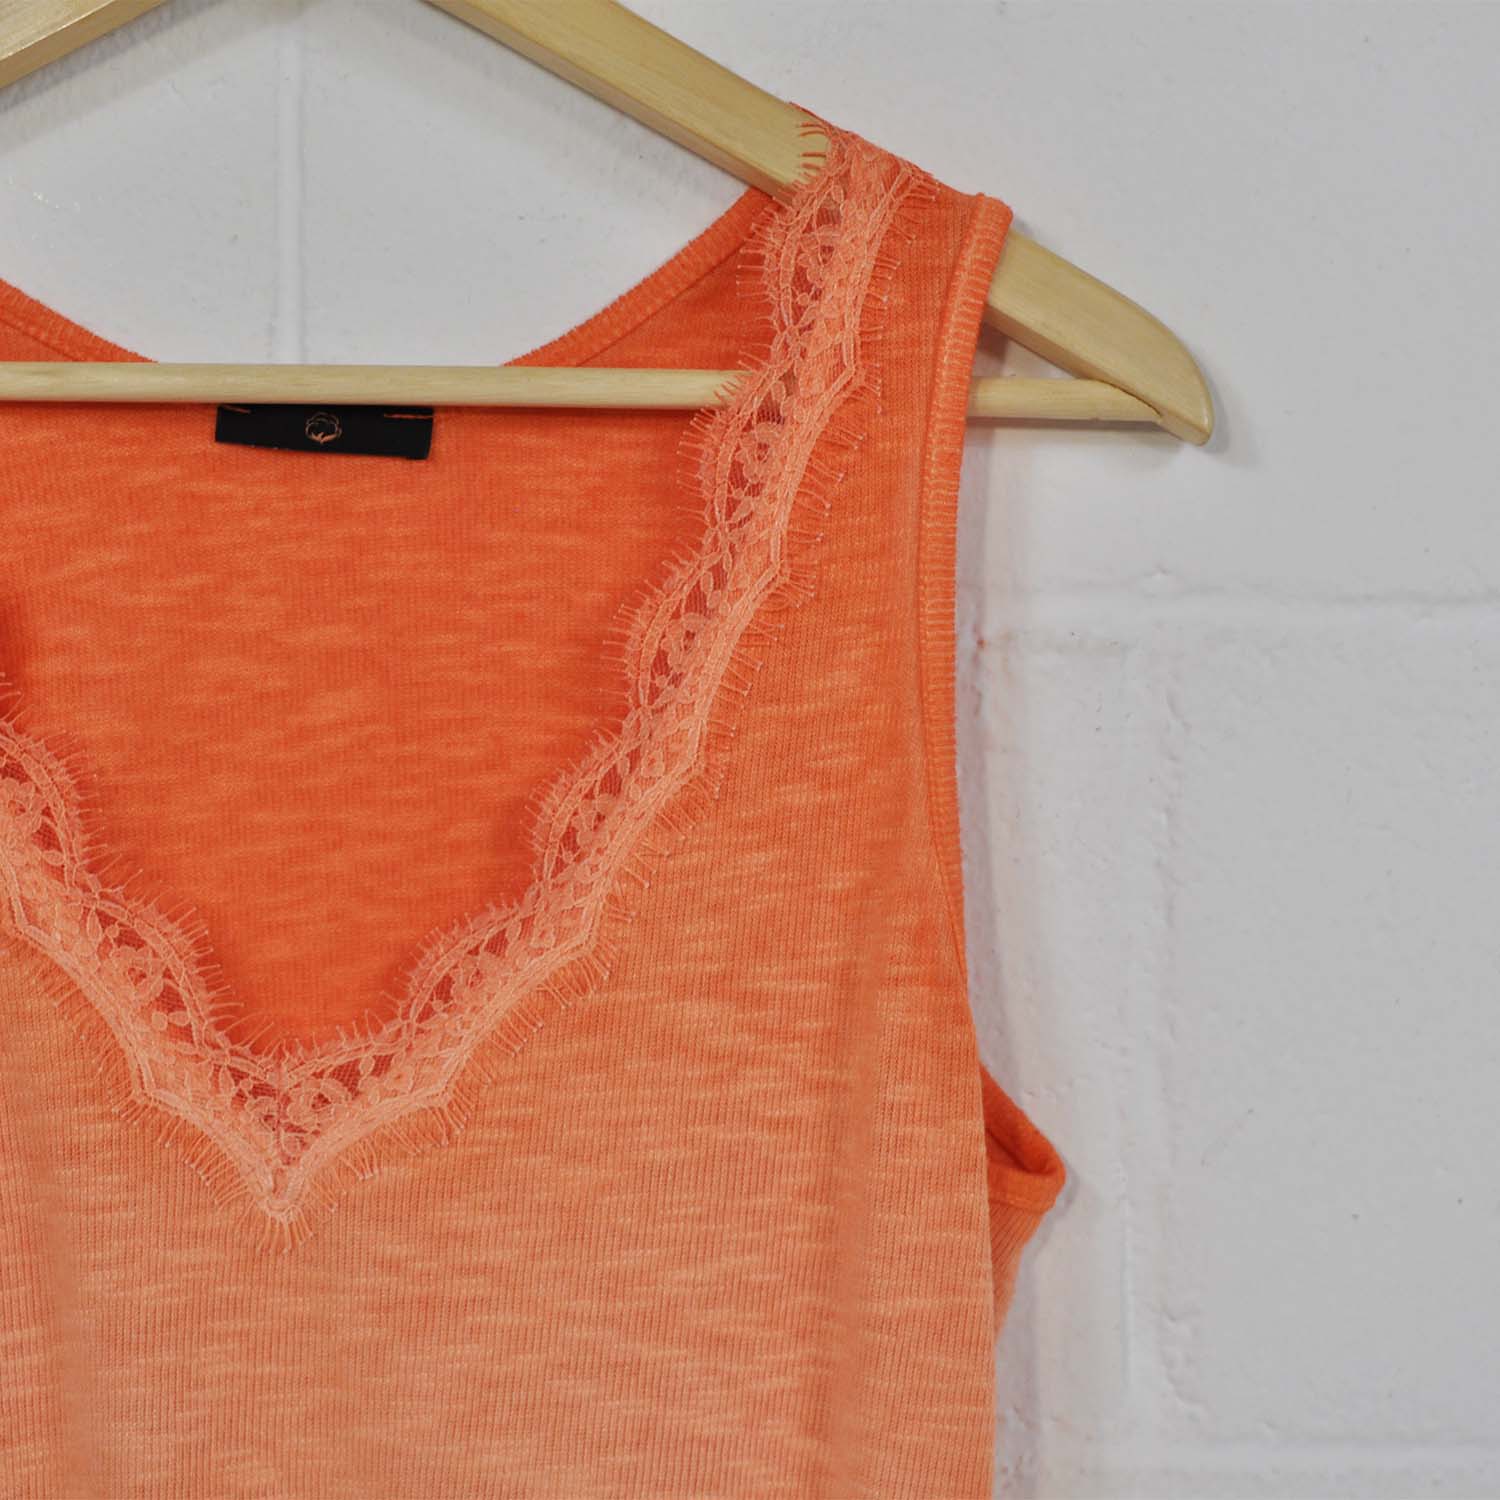 Orange lingerie t-shirt